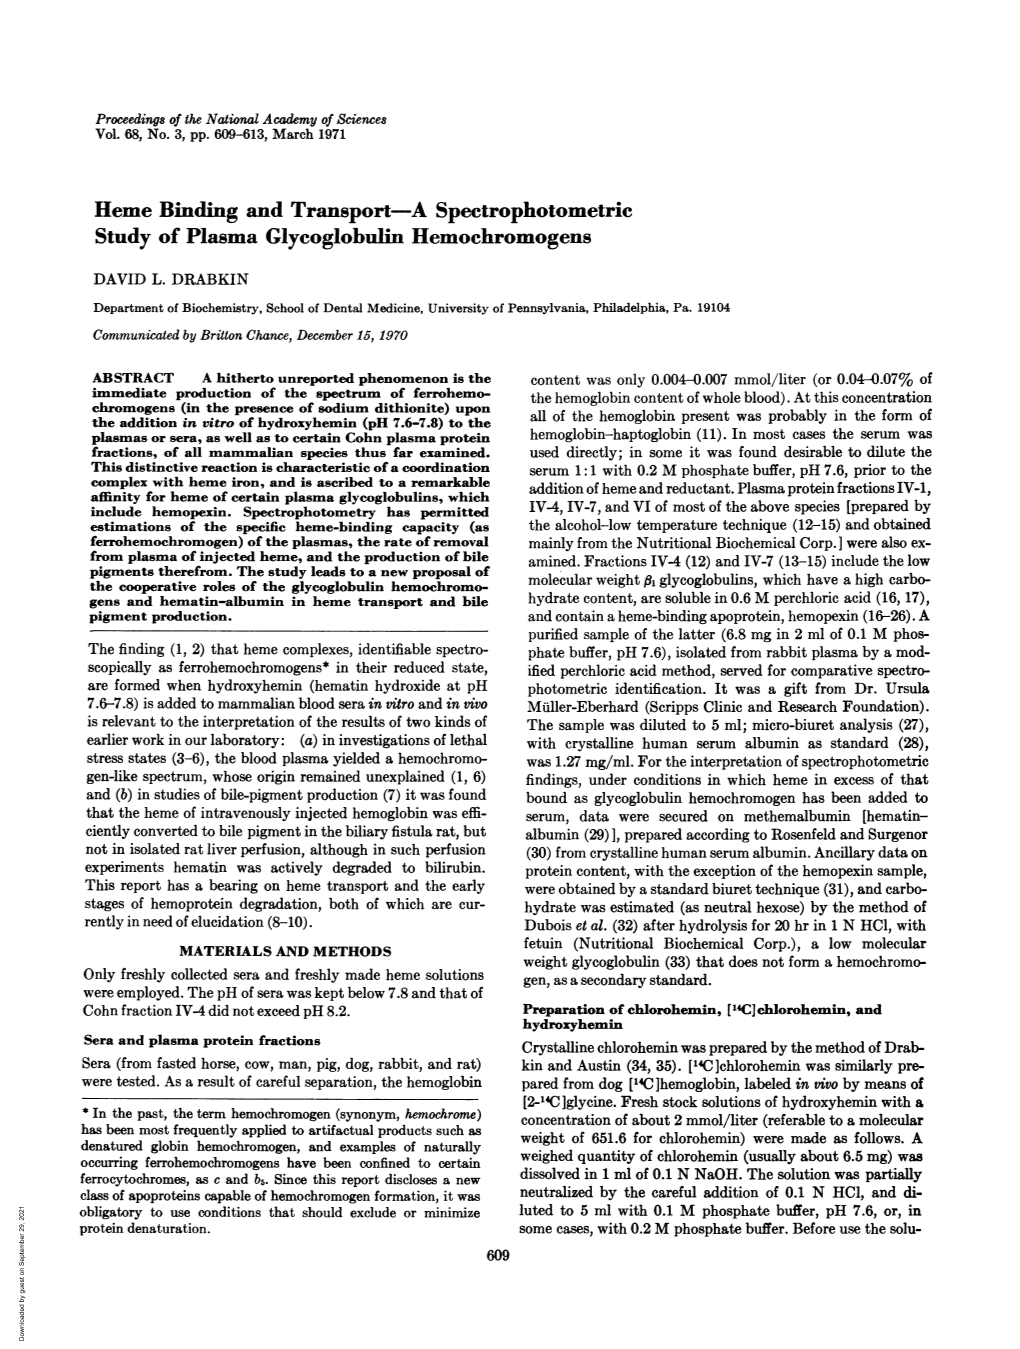 Study of Plasma Glycoglobulin Hemochromogens